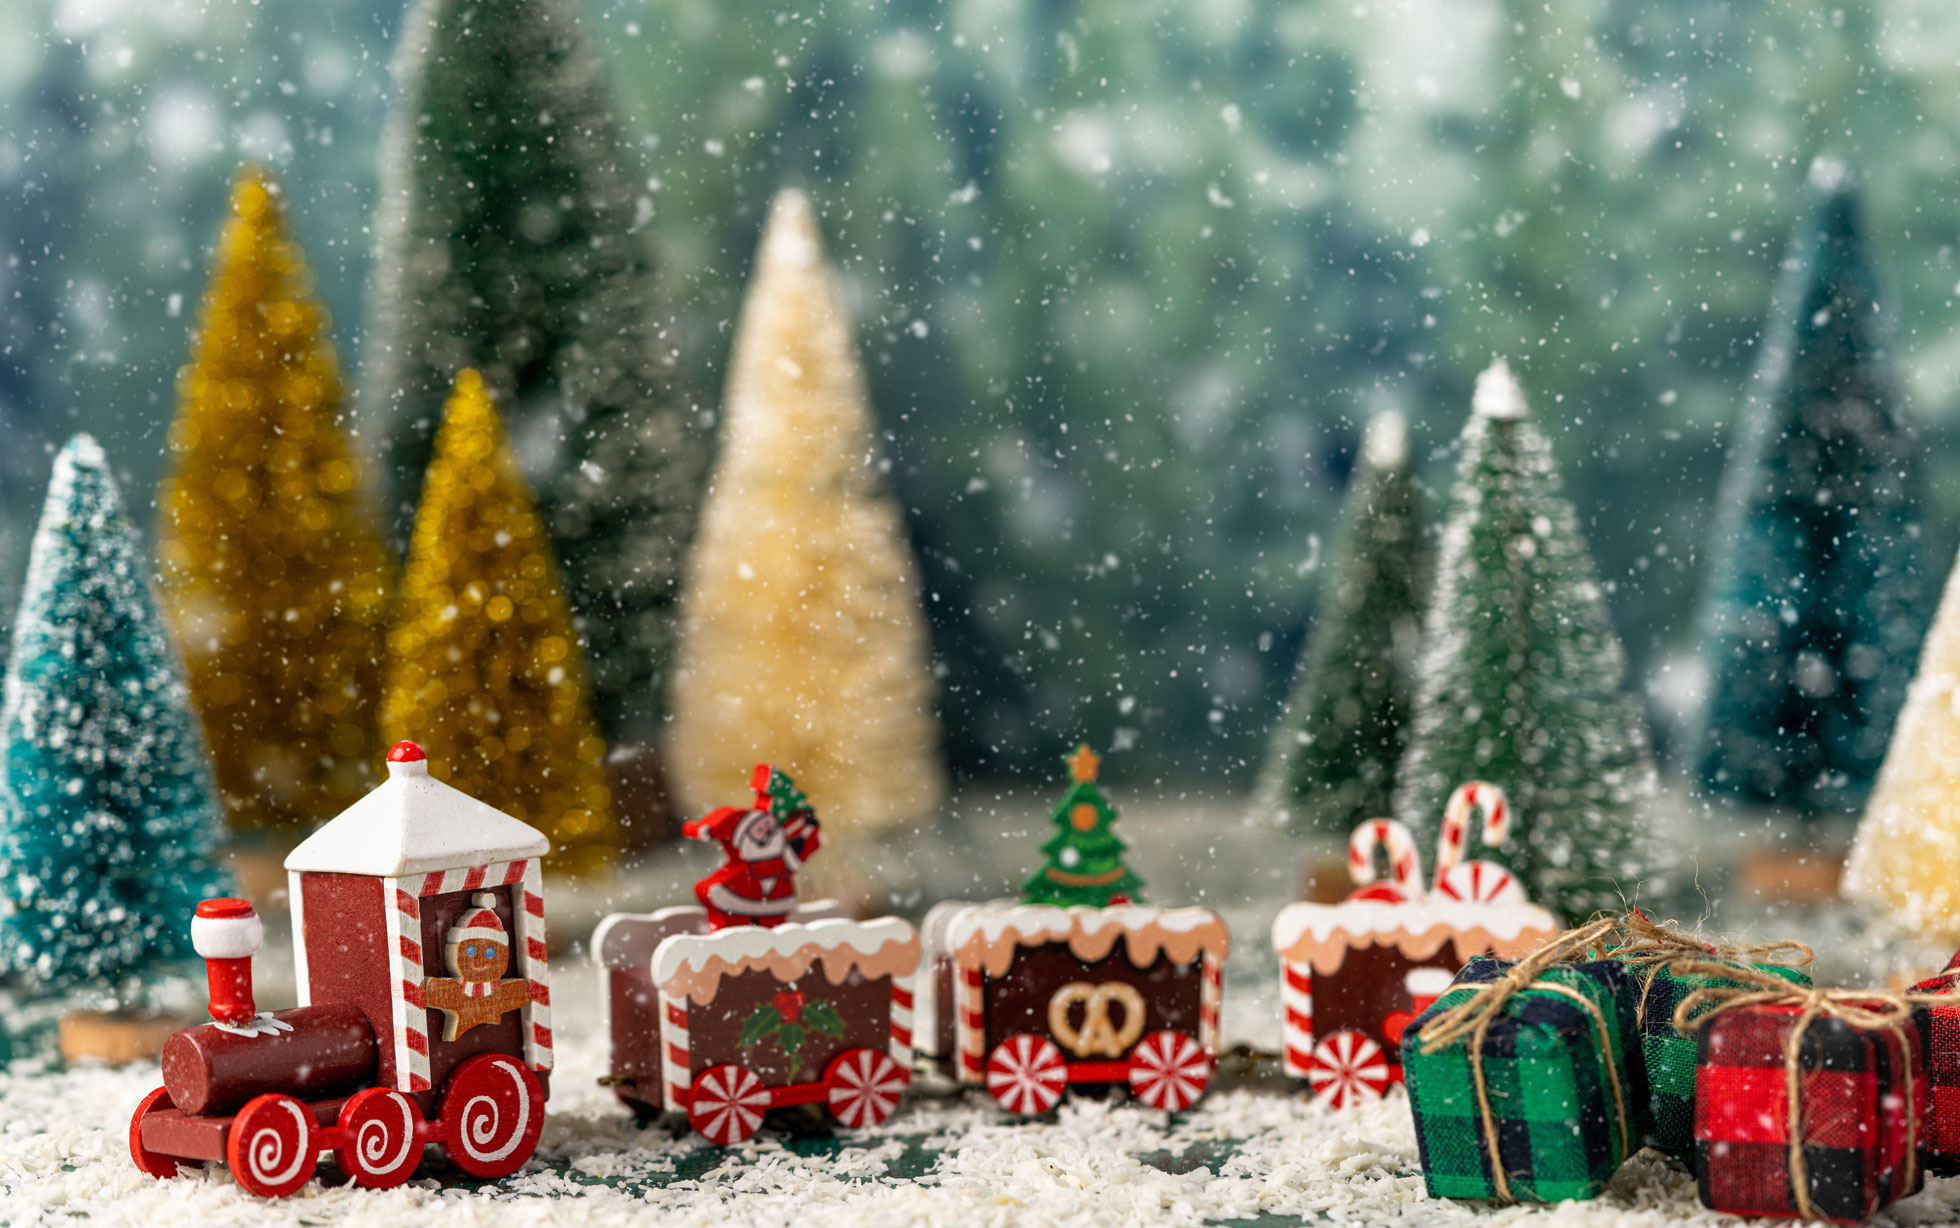 Les plus beaux petits trains de Noël pour une ambiance chaleureuse